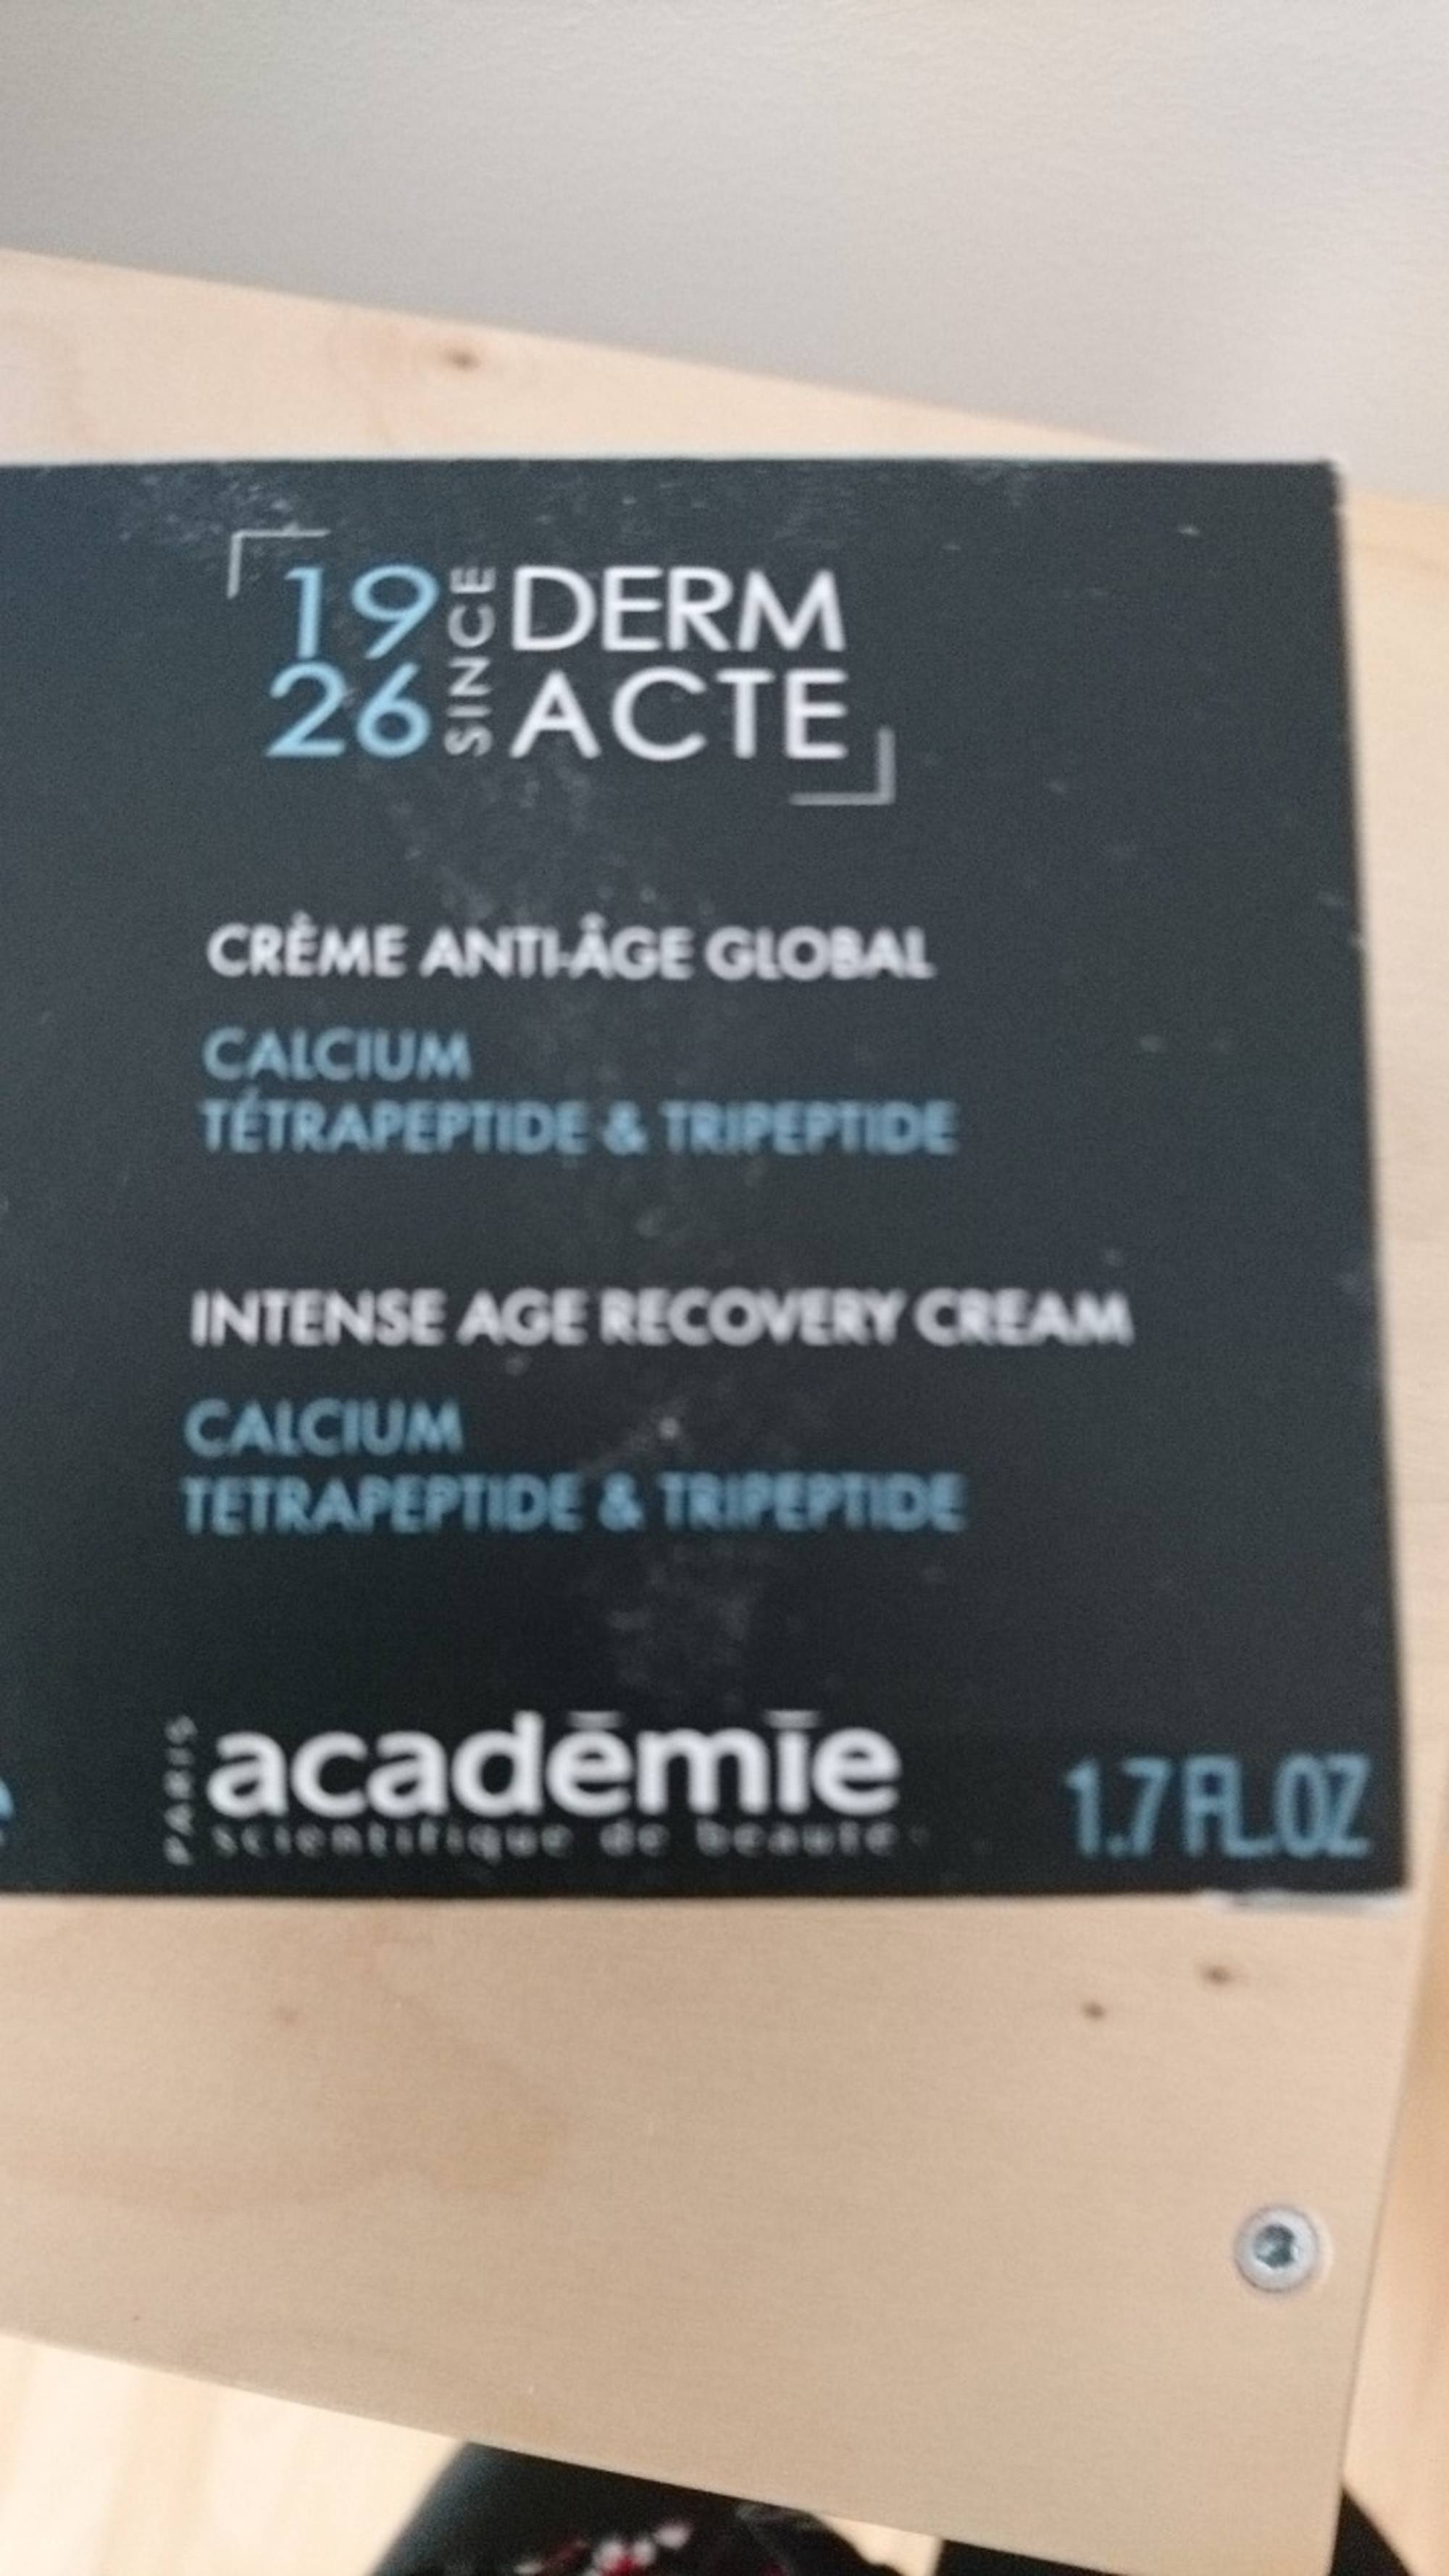 ACADEMIE - Derm acte - Crème anti-âge global